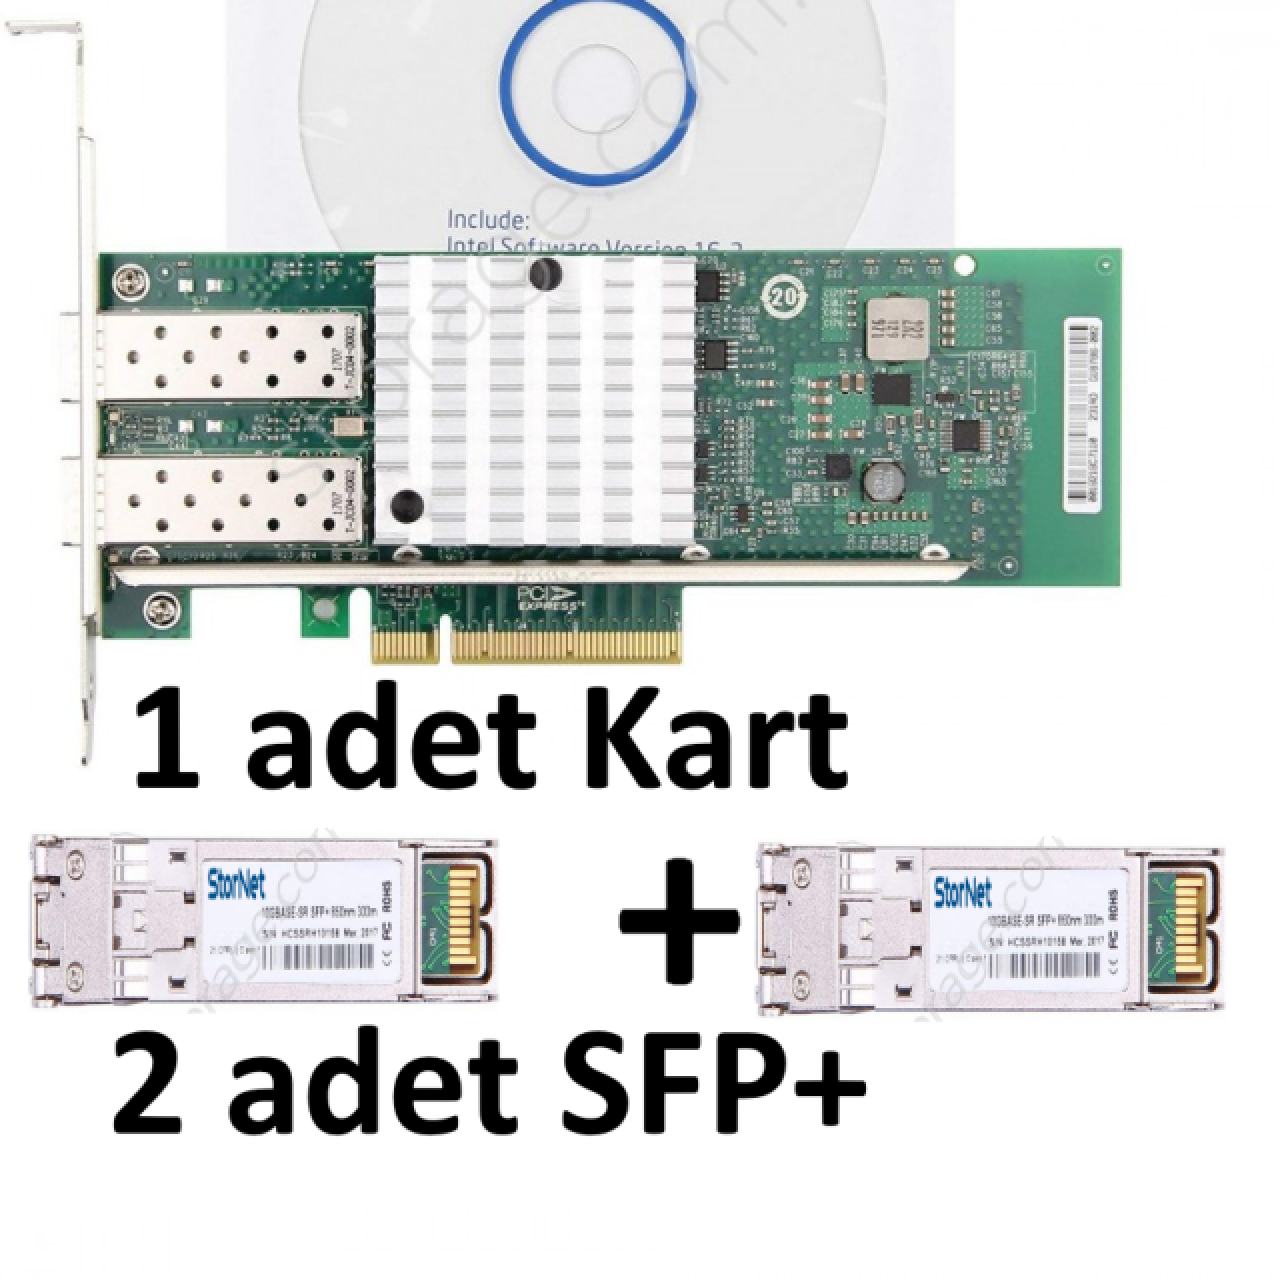 Bundle 1 adet X520-DA2 intel Kart + 2 adet SFP MM Transceiver